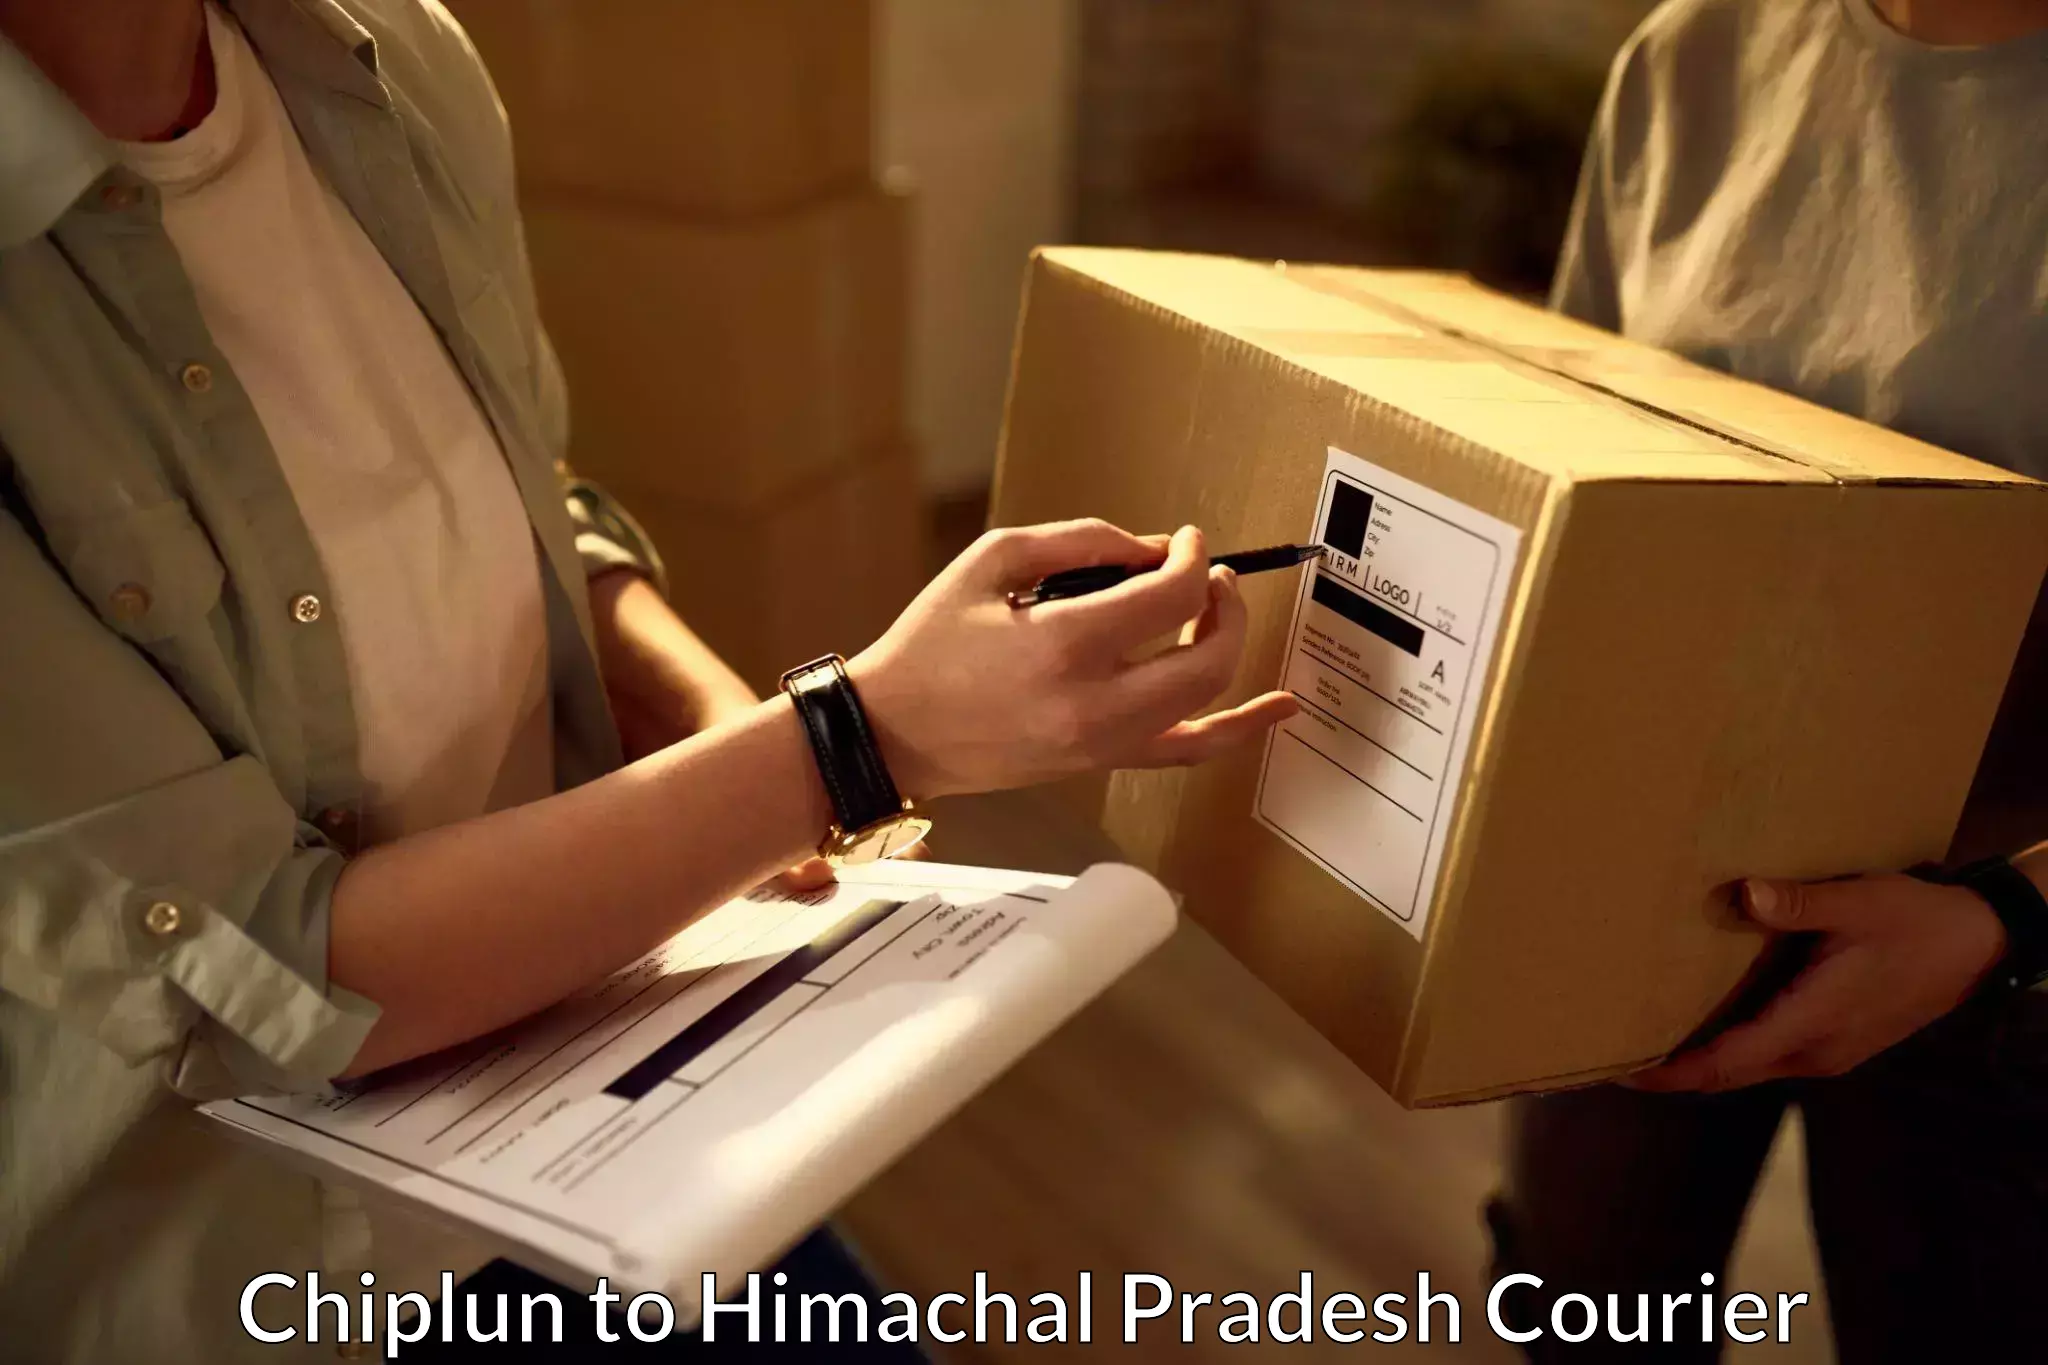 Weekend courier service Chiplun to Una Himachal Pradesh